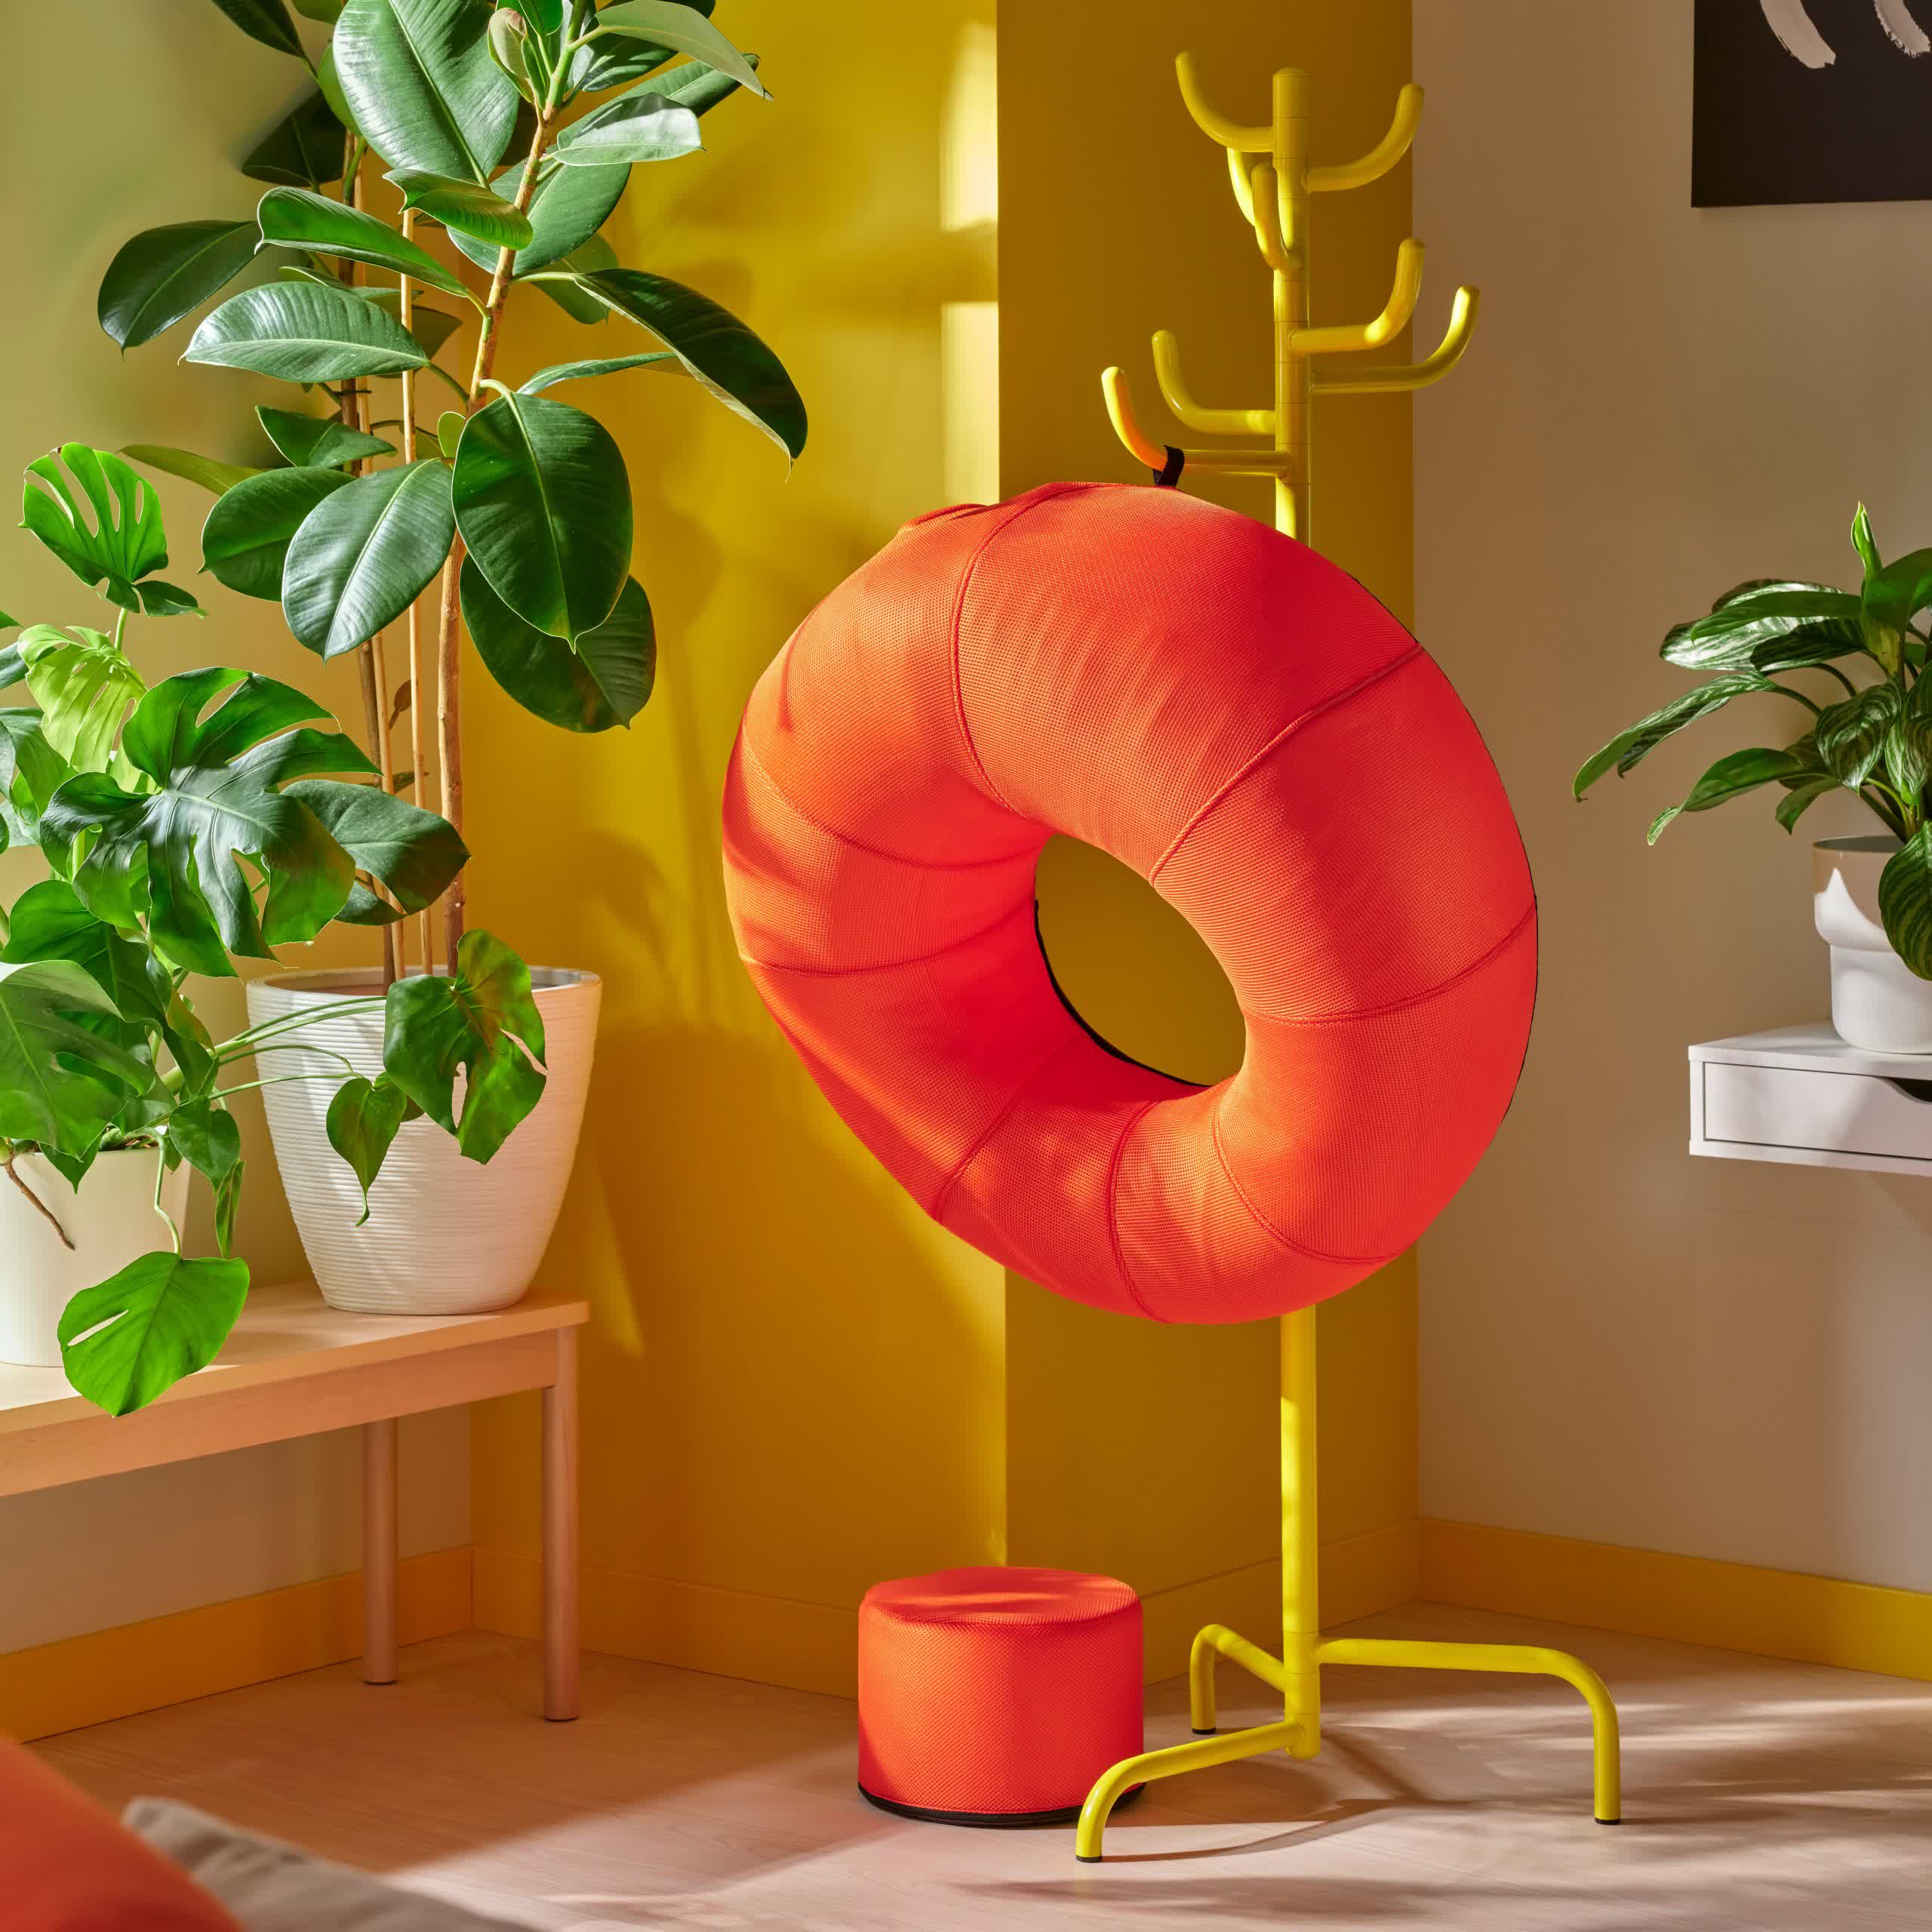 Ikea annonce Brännboll nouvelle ligne meubles alliant style fonctionnalité